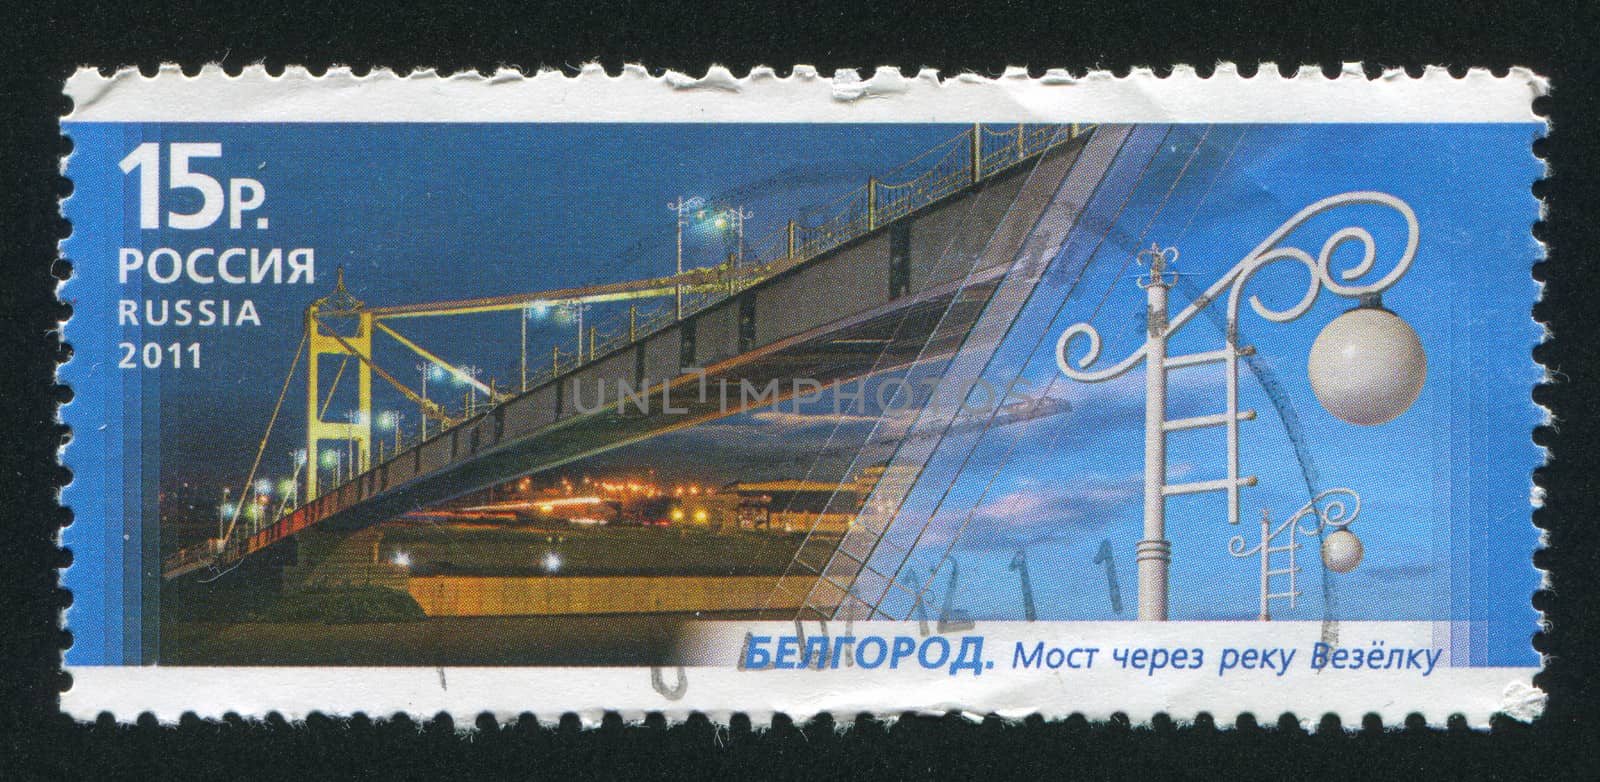 Bridge over Vezelka in Belgorod by rook